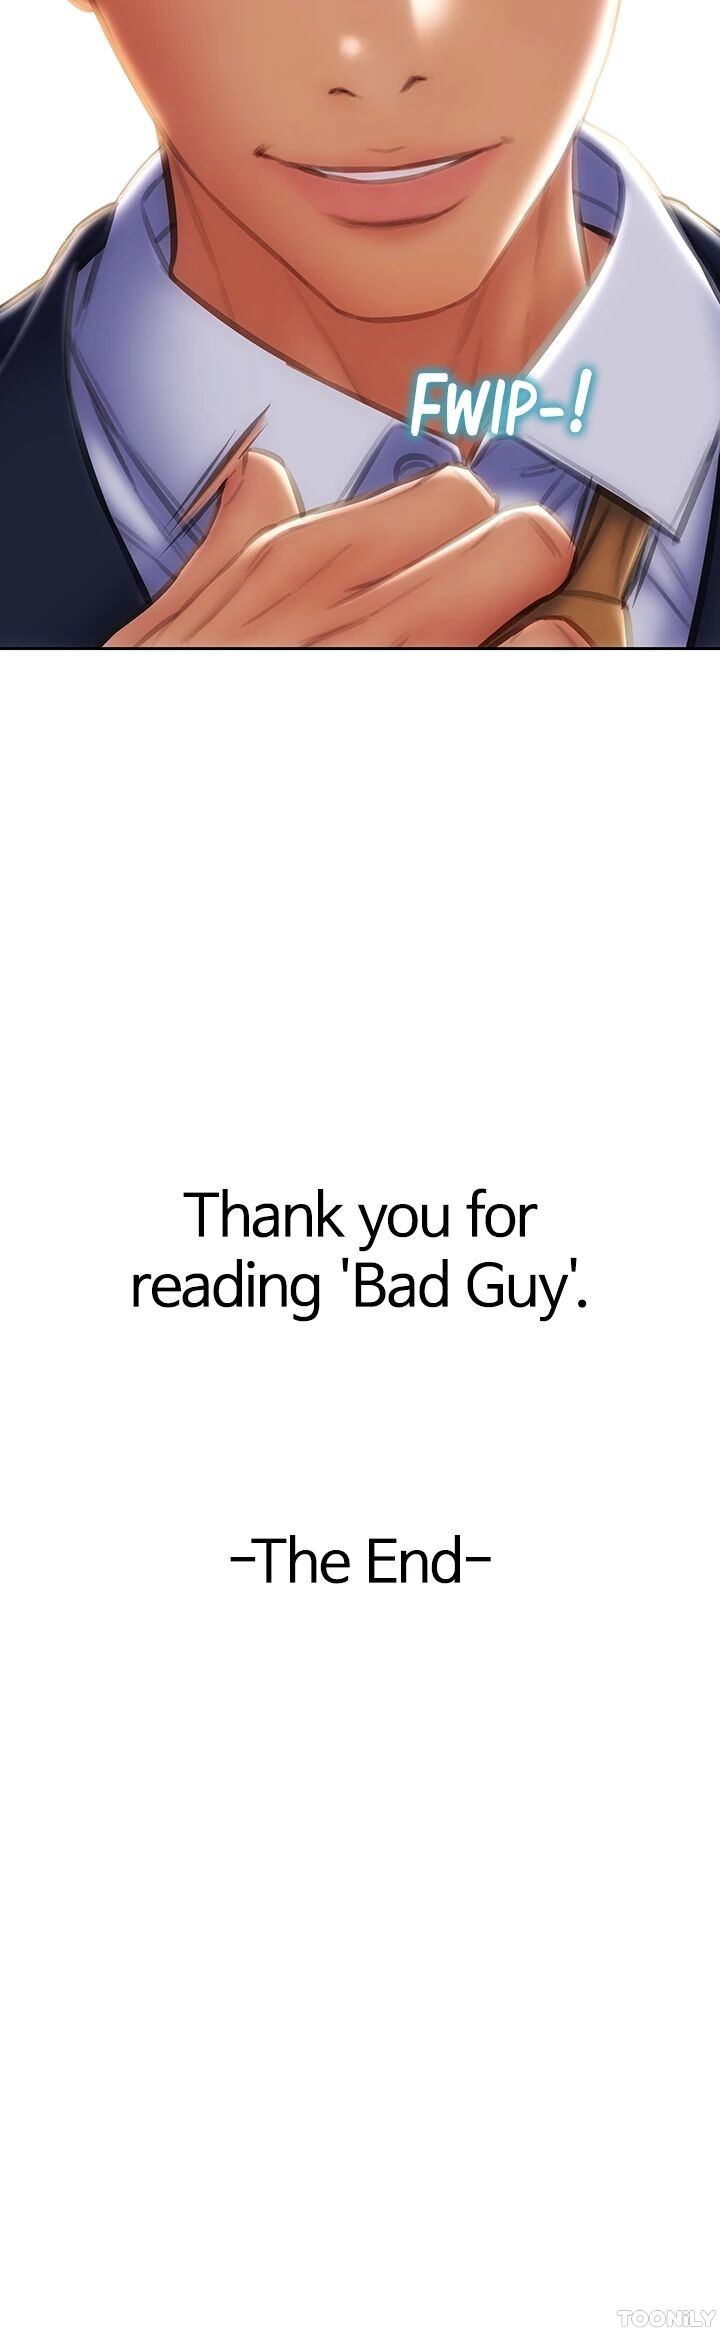 Bad Guy image